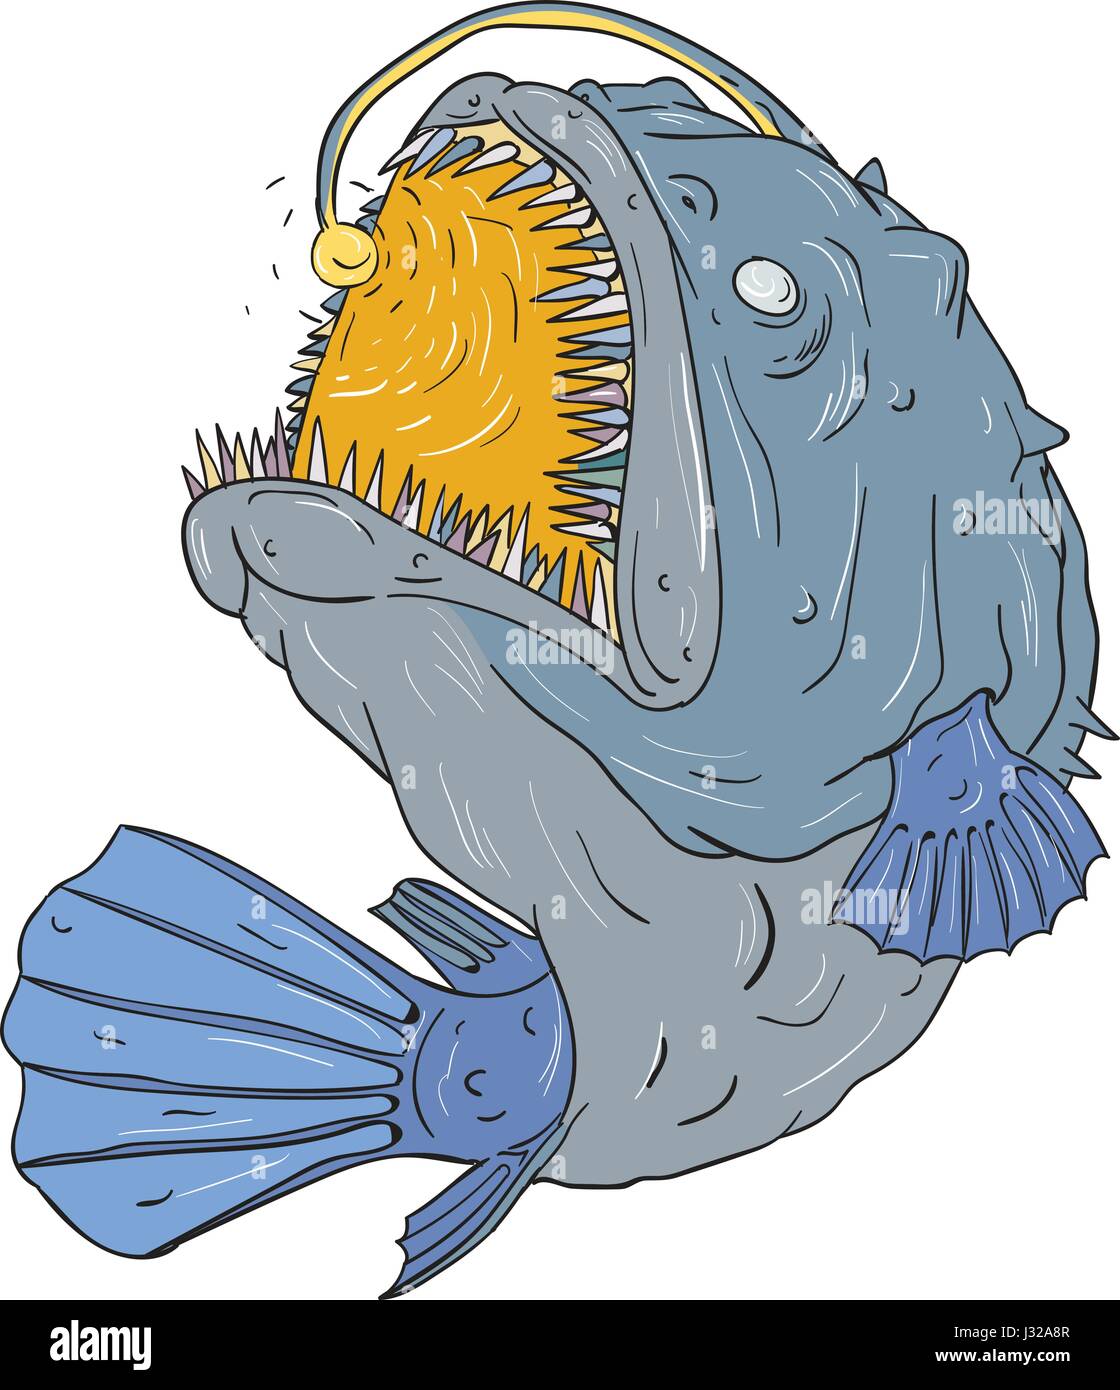 Disegno stile sketch illustrazione di una rana pescatrice dell ordine dei Teleostei Lophiiformes che sono pesce osseo prende il nome per la loro caratteristica modalità di comportamento predatorio, Illustrazione Vettoriale